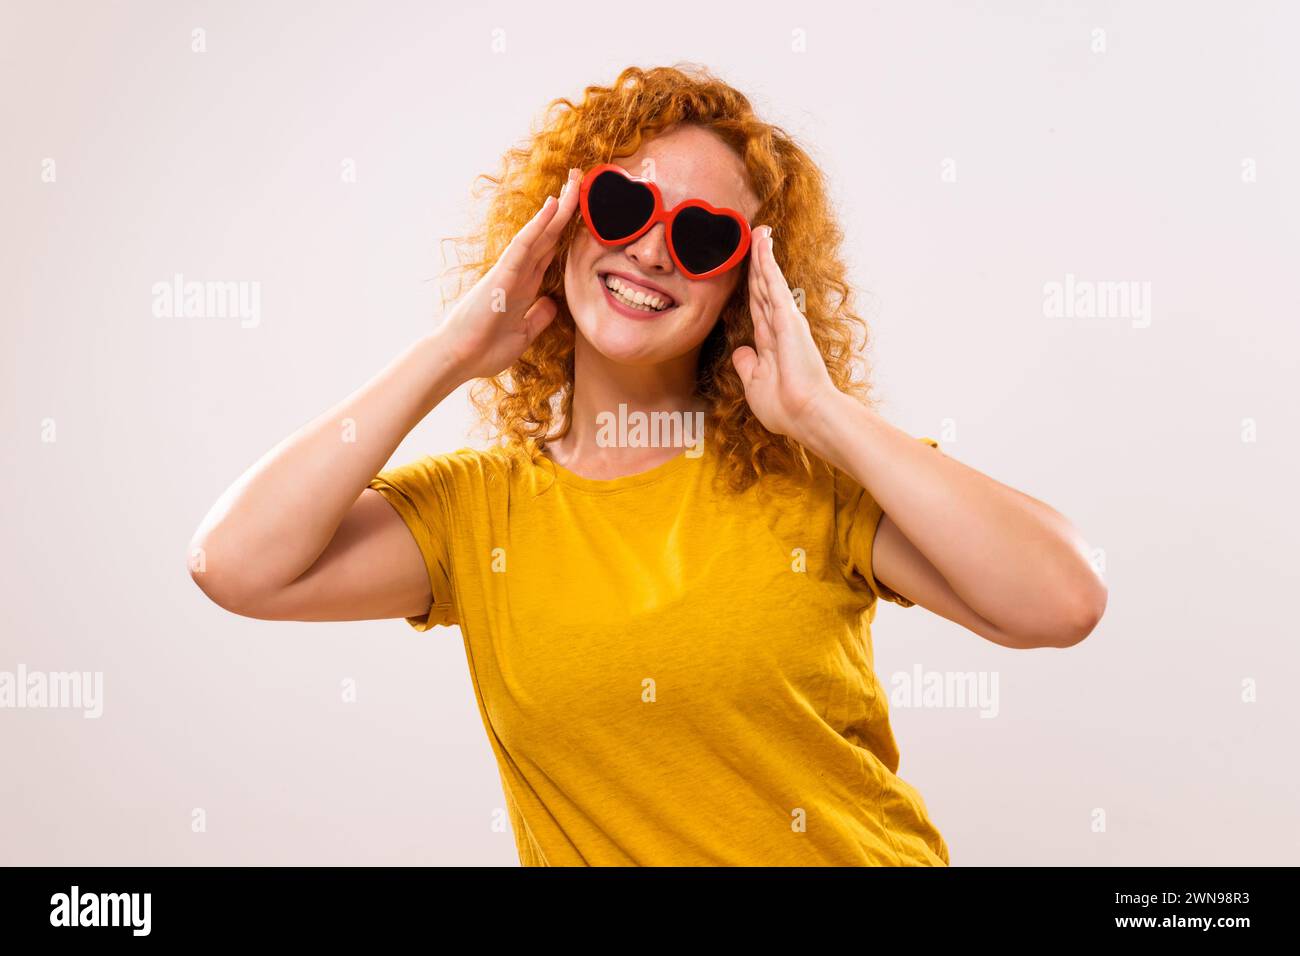 Image de femme heureuse de gingembre avec des lunettes de soleil en forme de coeur rouge. Banque D'Images